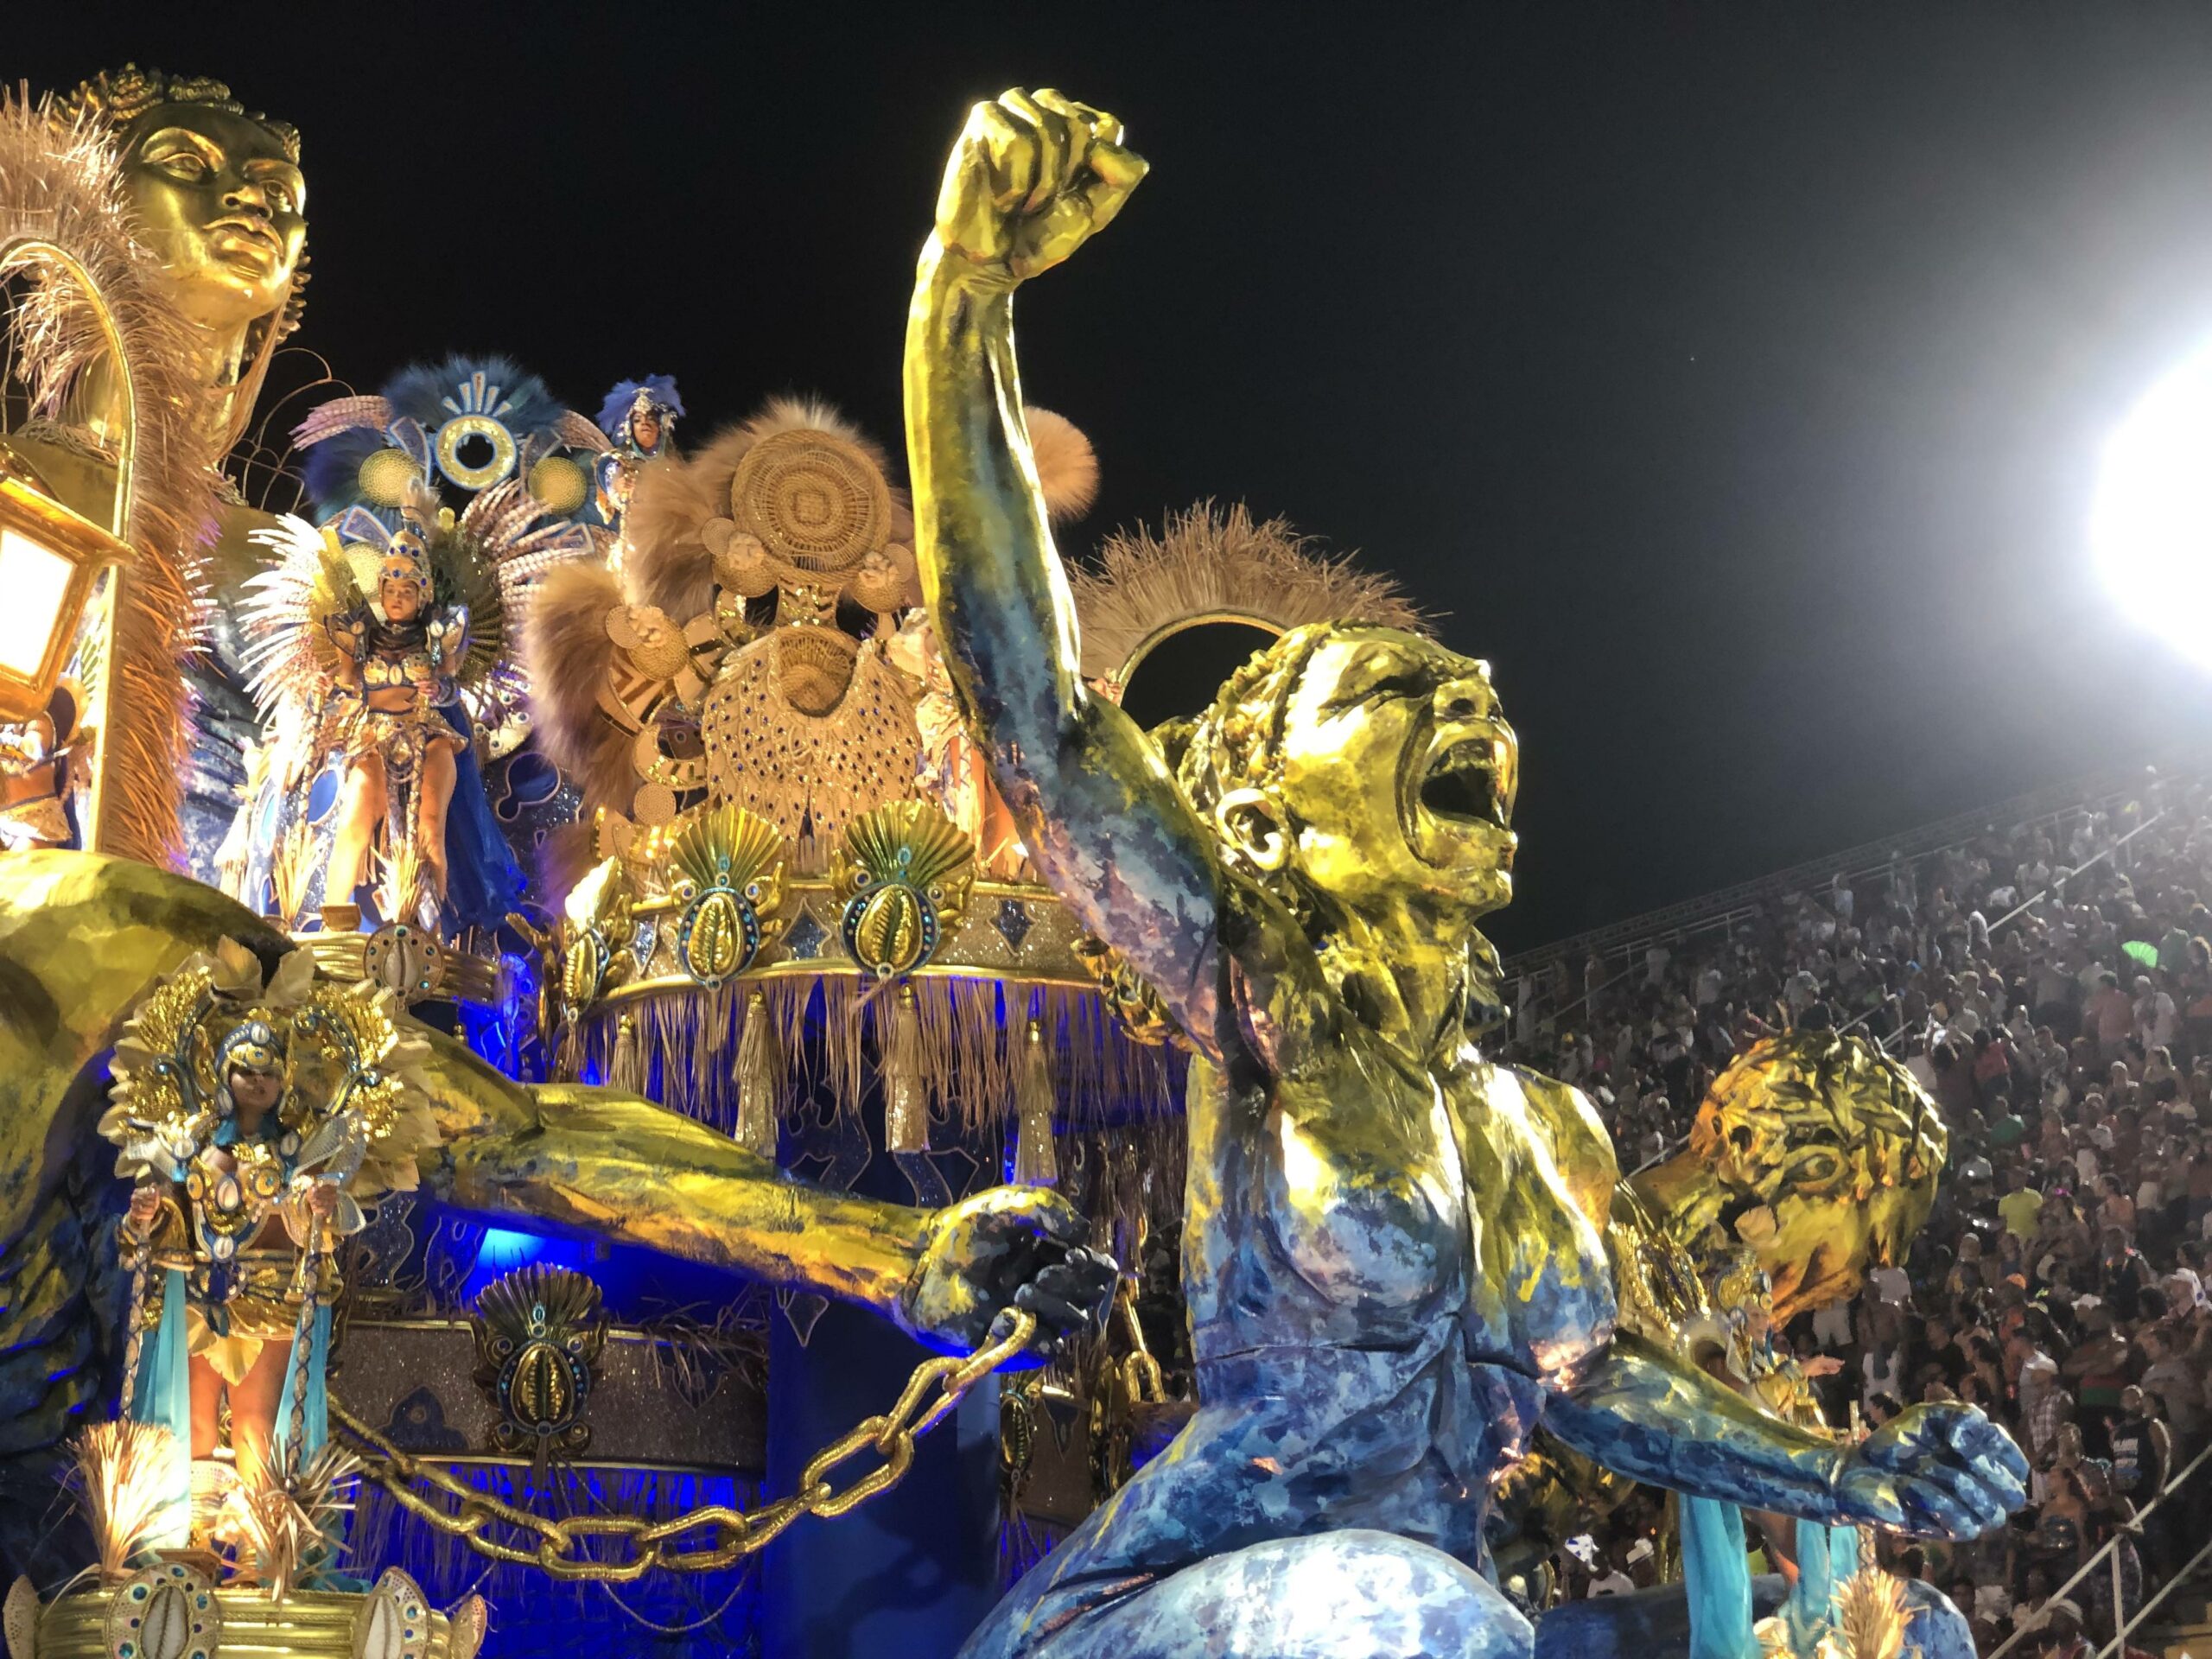 Photos: Carnival Parades Return in Brazil - The Atlantic